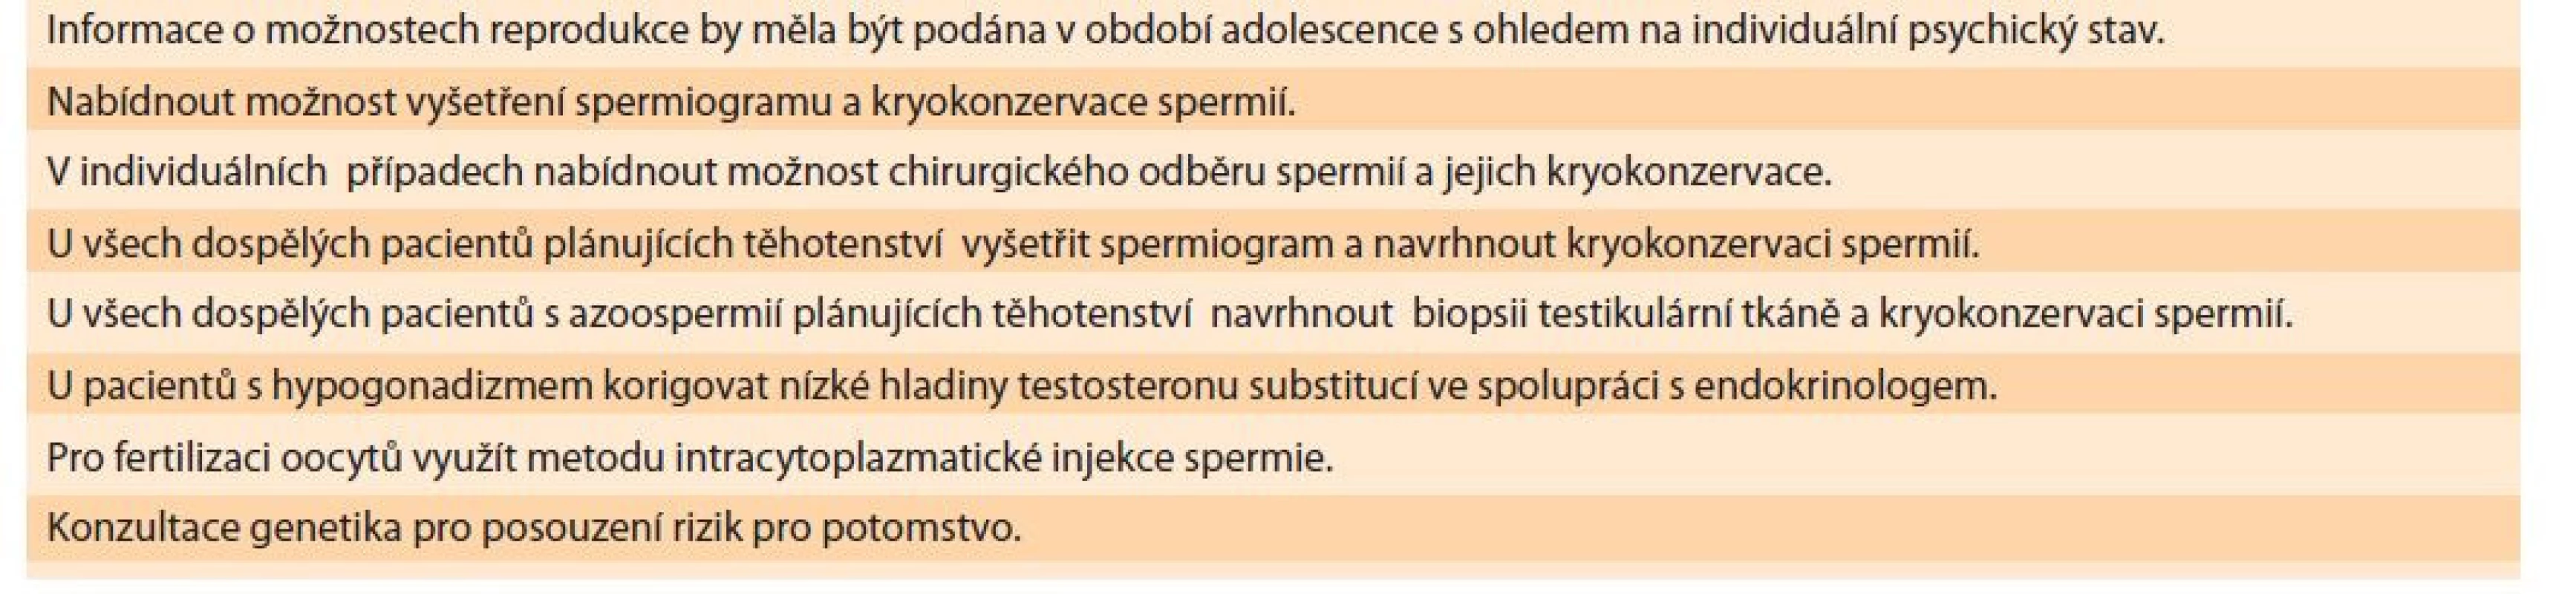 Přehled doporučení pro reprodukci mužů s Klinefelterovým syndromem.<br>
Tab. 3. Overview of recommendations for the reproduction of men with Klinefelter syndrome.